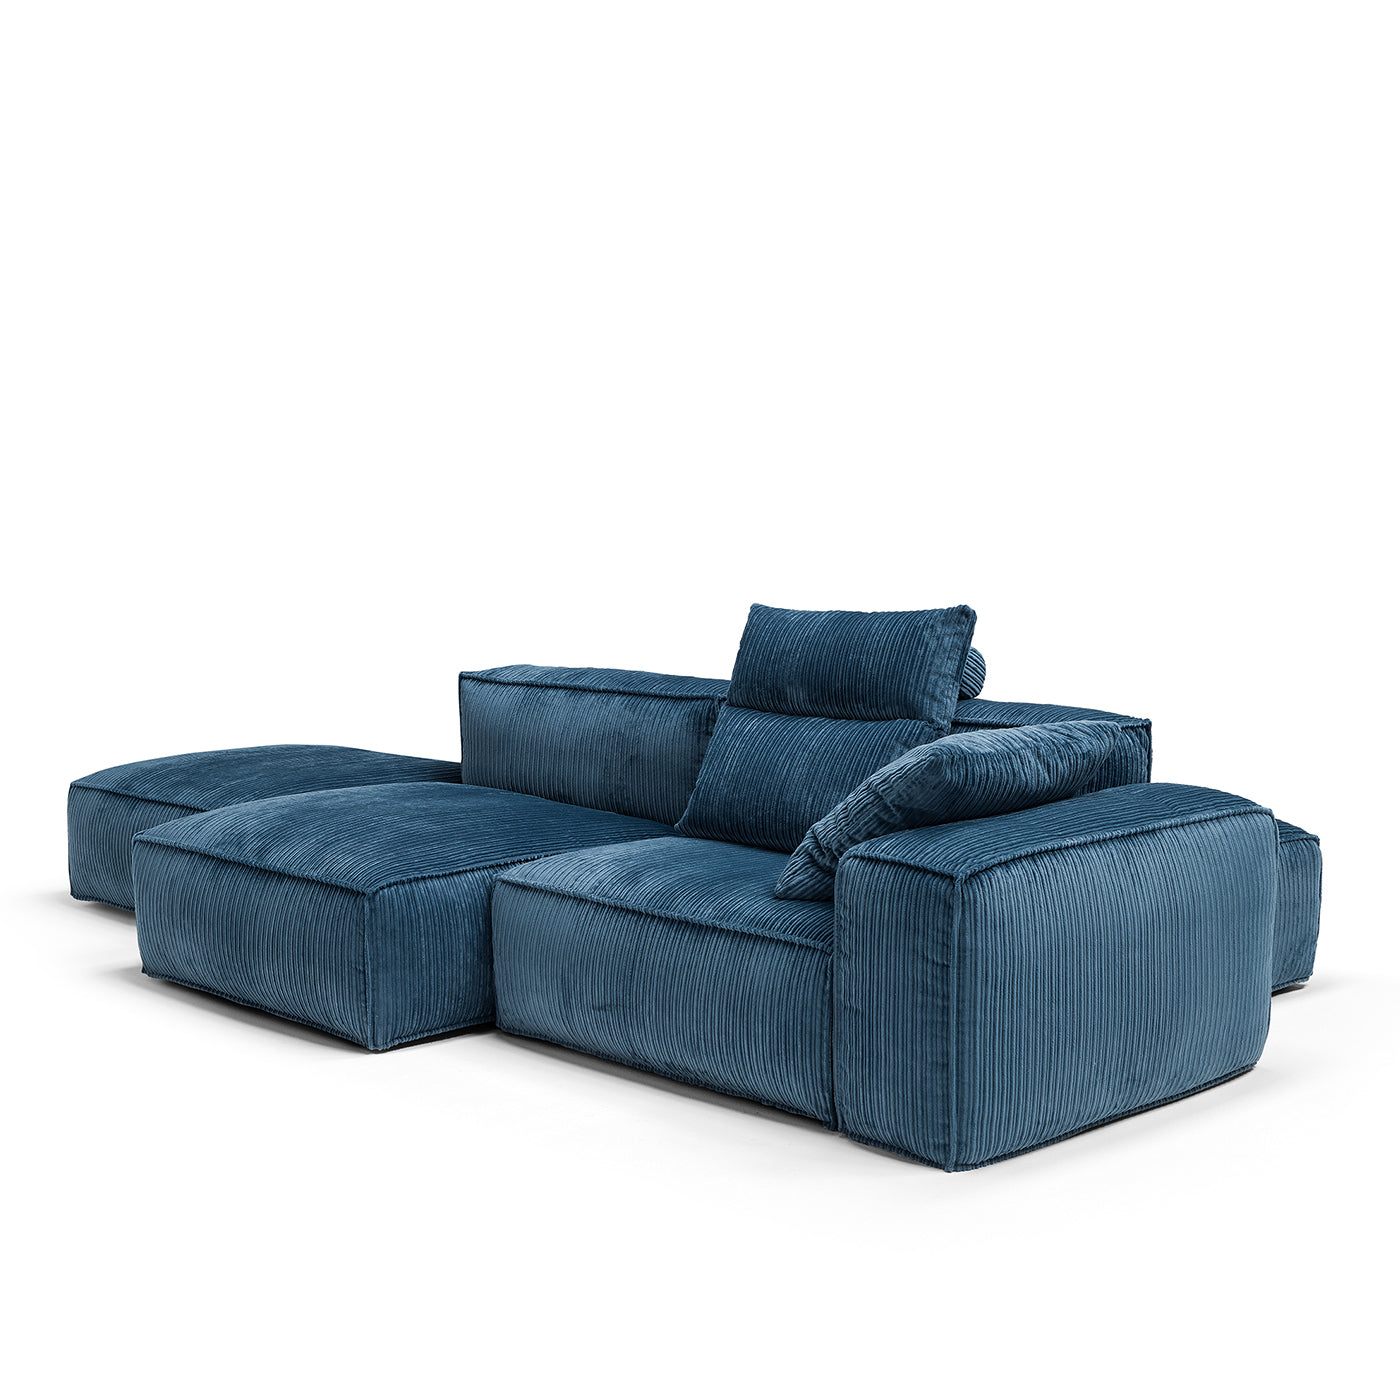 Astor Blue Sofa - Alternative view 1